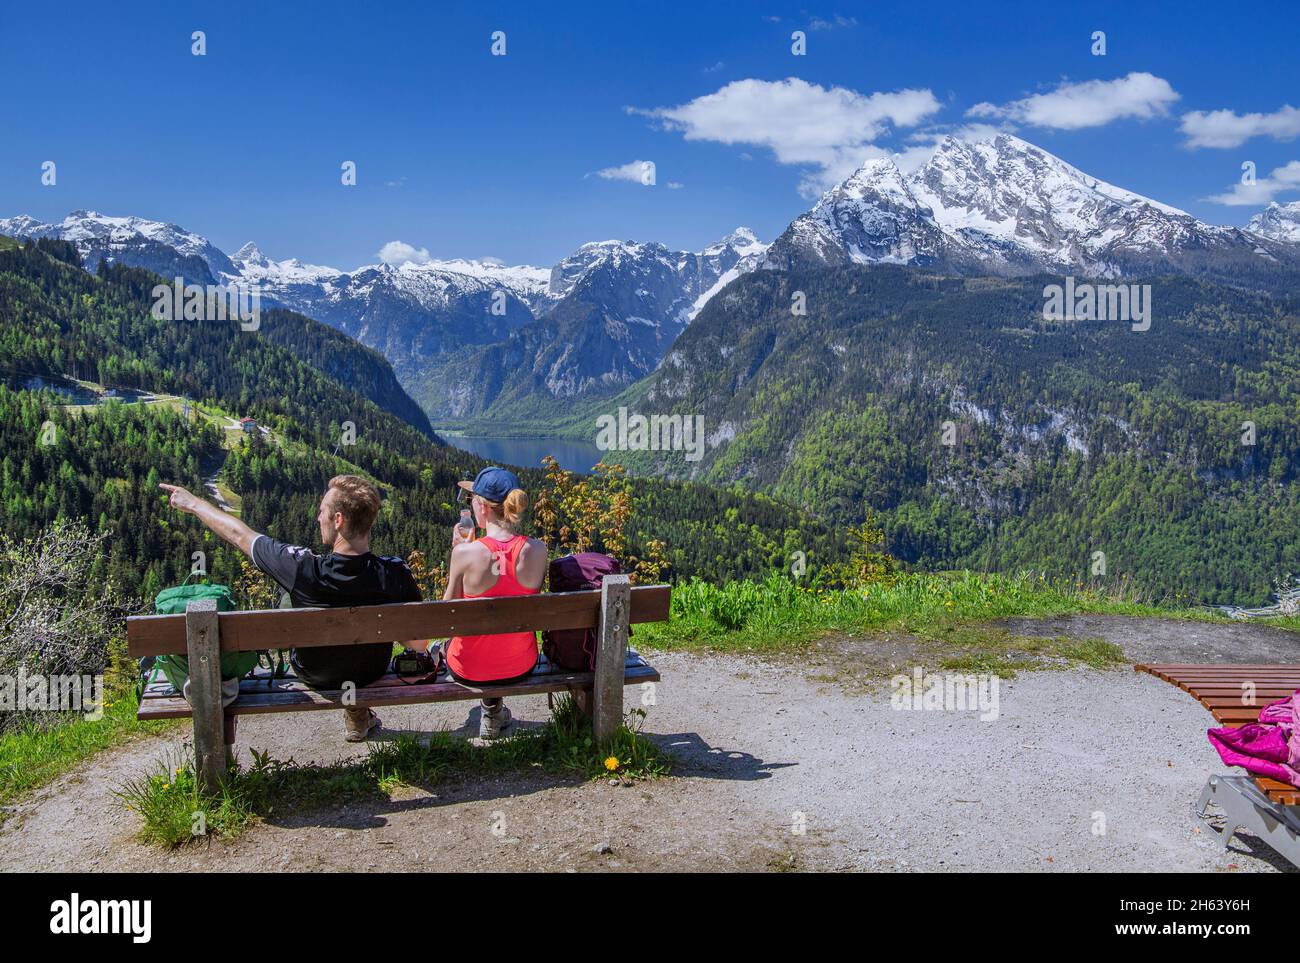 Aussichtsplattform mit Urlaubern auf dem brandkopf mit Blick auf den königssee, das steinernes Meer und watzmann 2713m, schönau am königssee, die berchtesgadener alpen, das berchtesgadener Land, oberbayern, bayern, deutschland Stockfoto